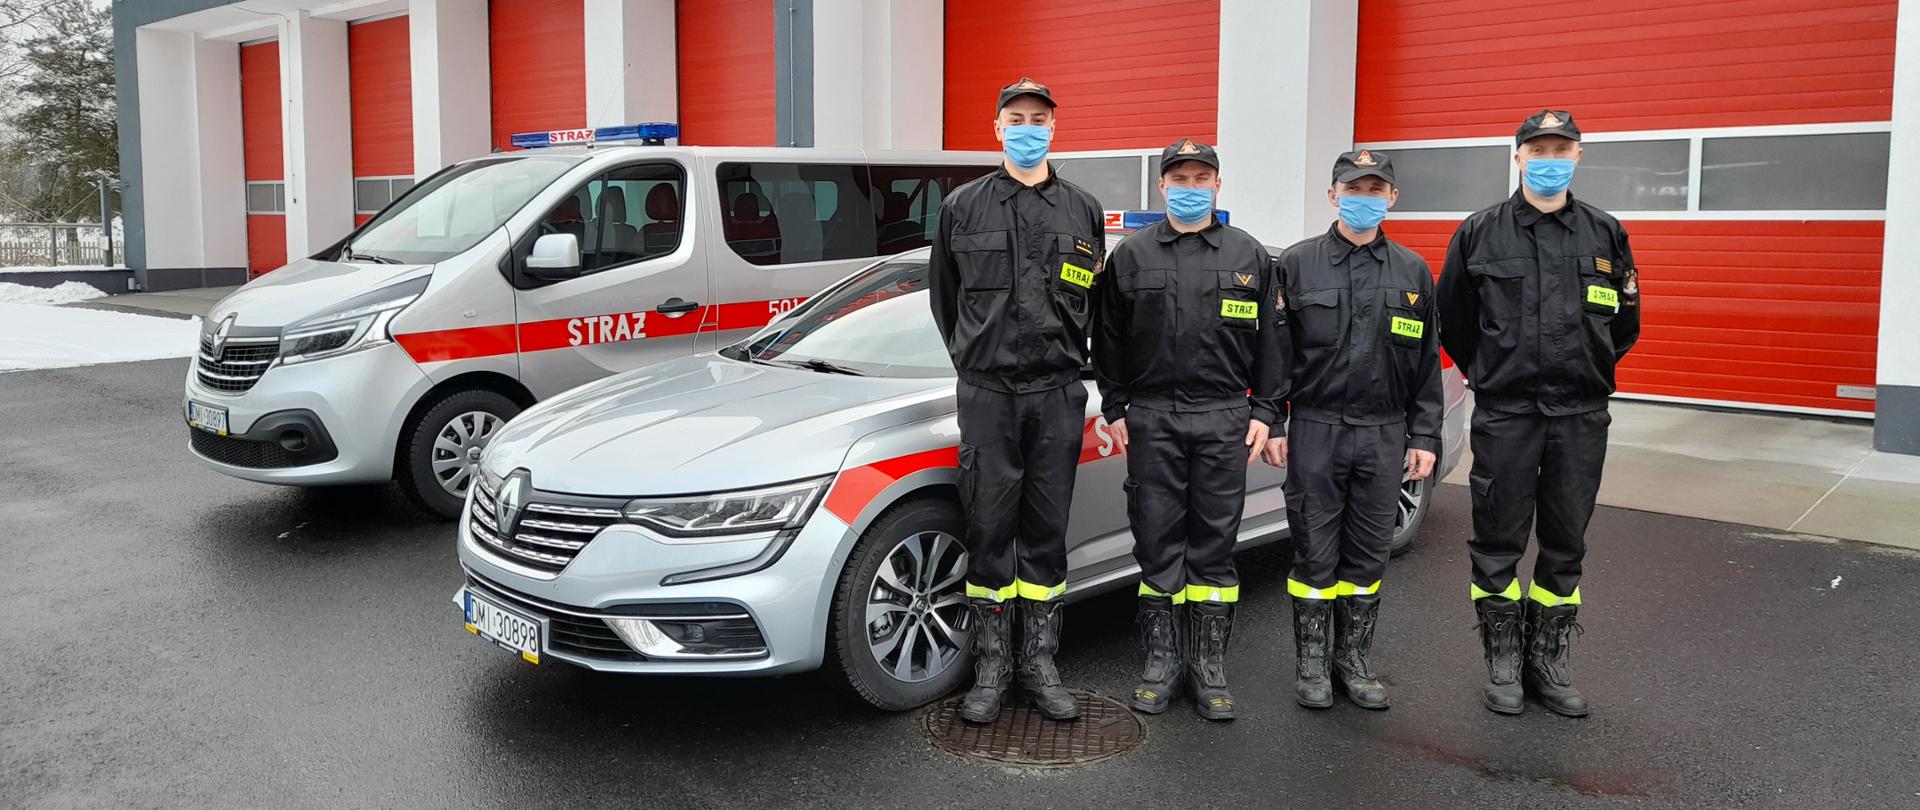 Czterech strażaków w ubraniach koszarowych stoi na tle samochodów osobowych i garaży jednostki ratowniczo gaśniczej w Miliczu